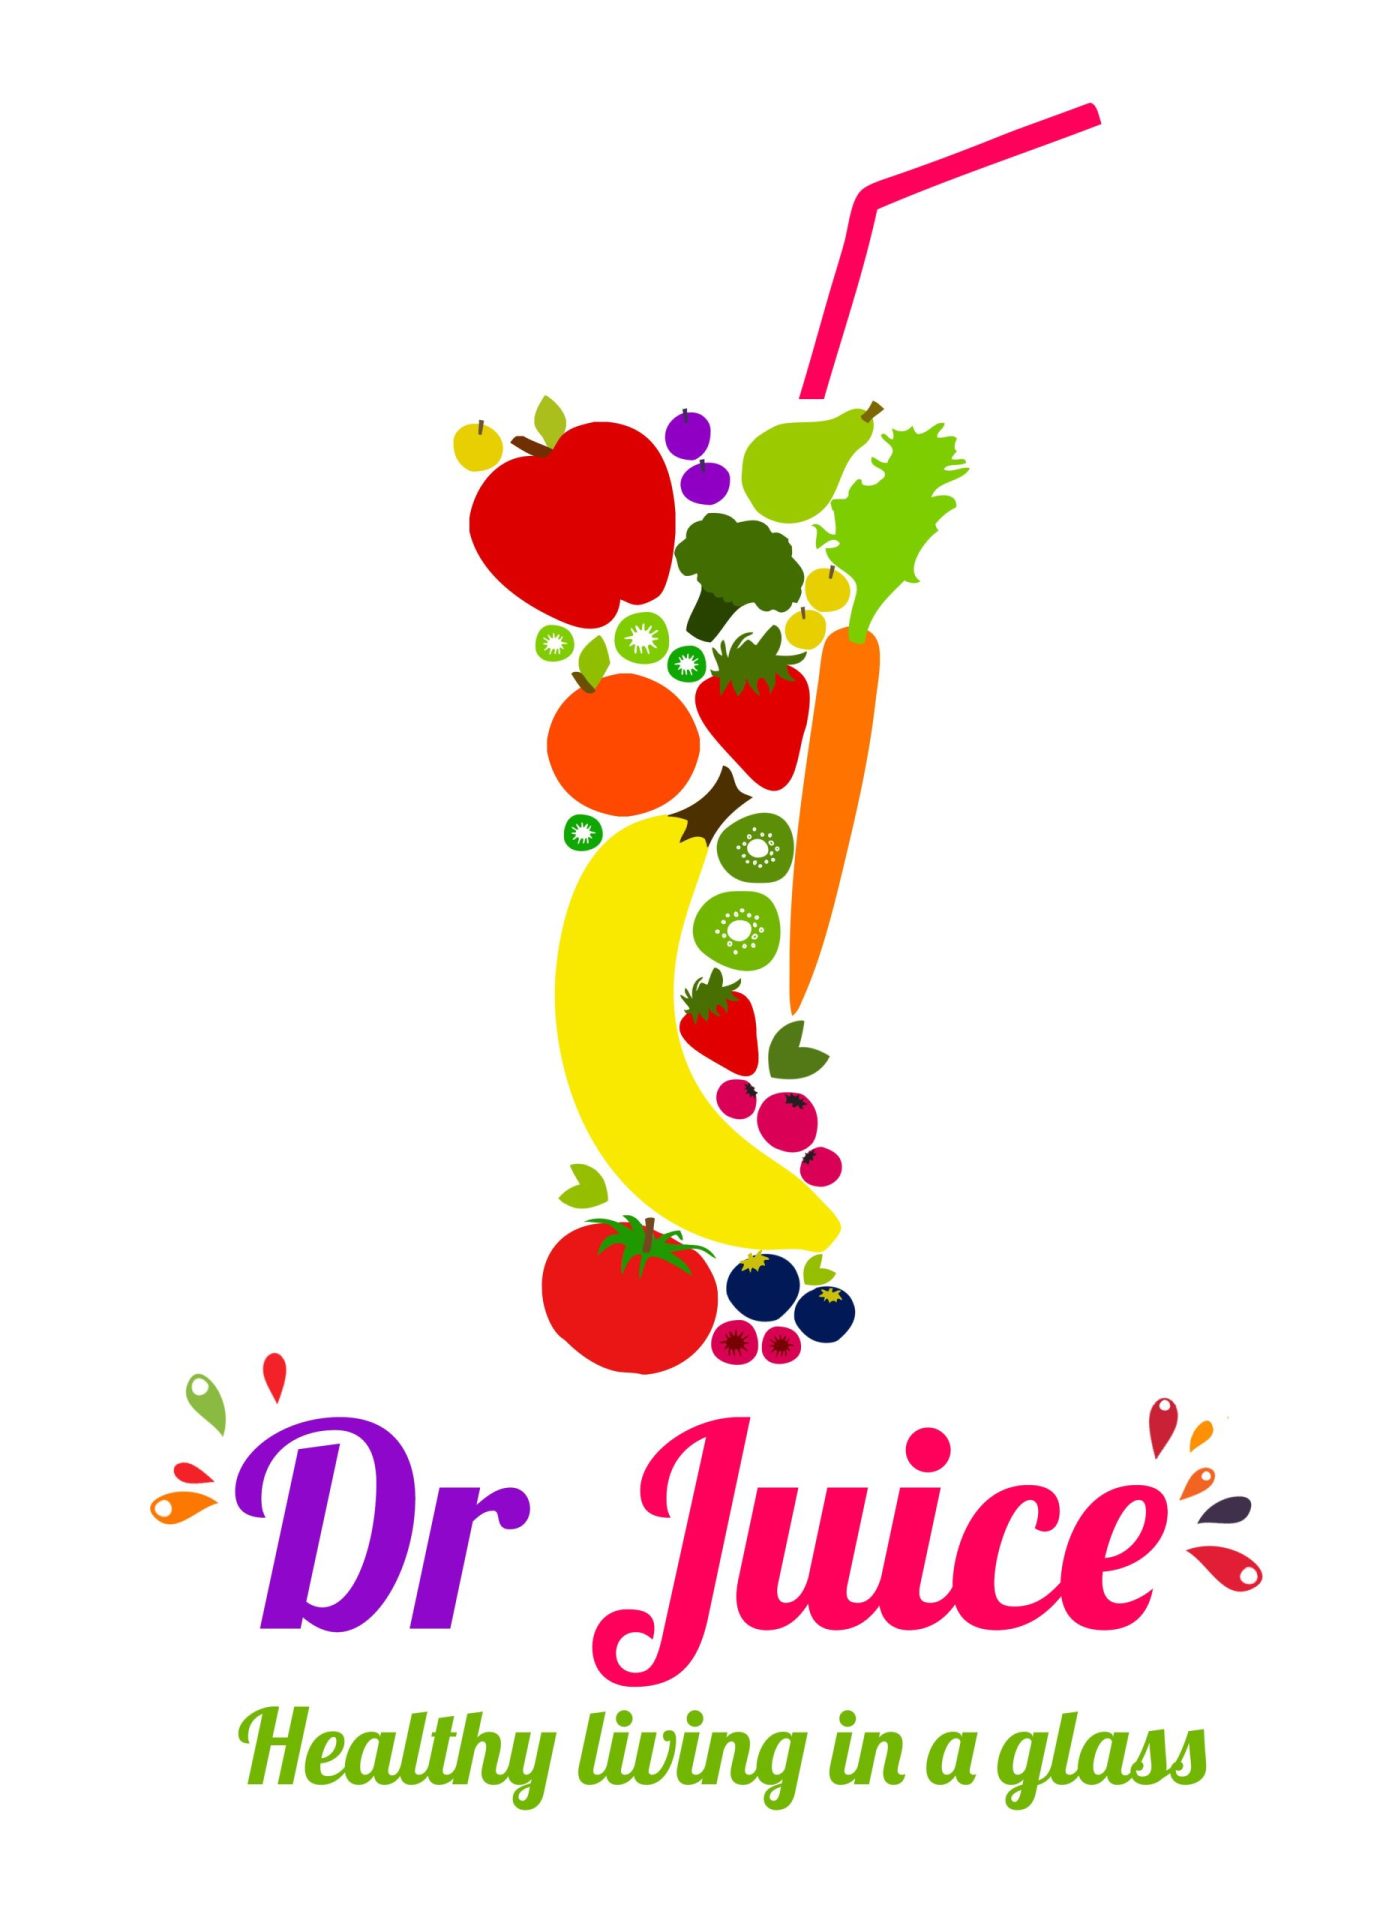 juice logo ideas 9